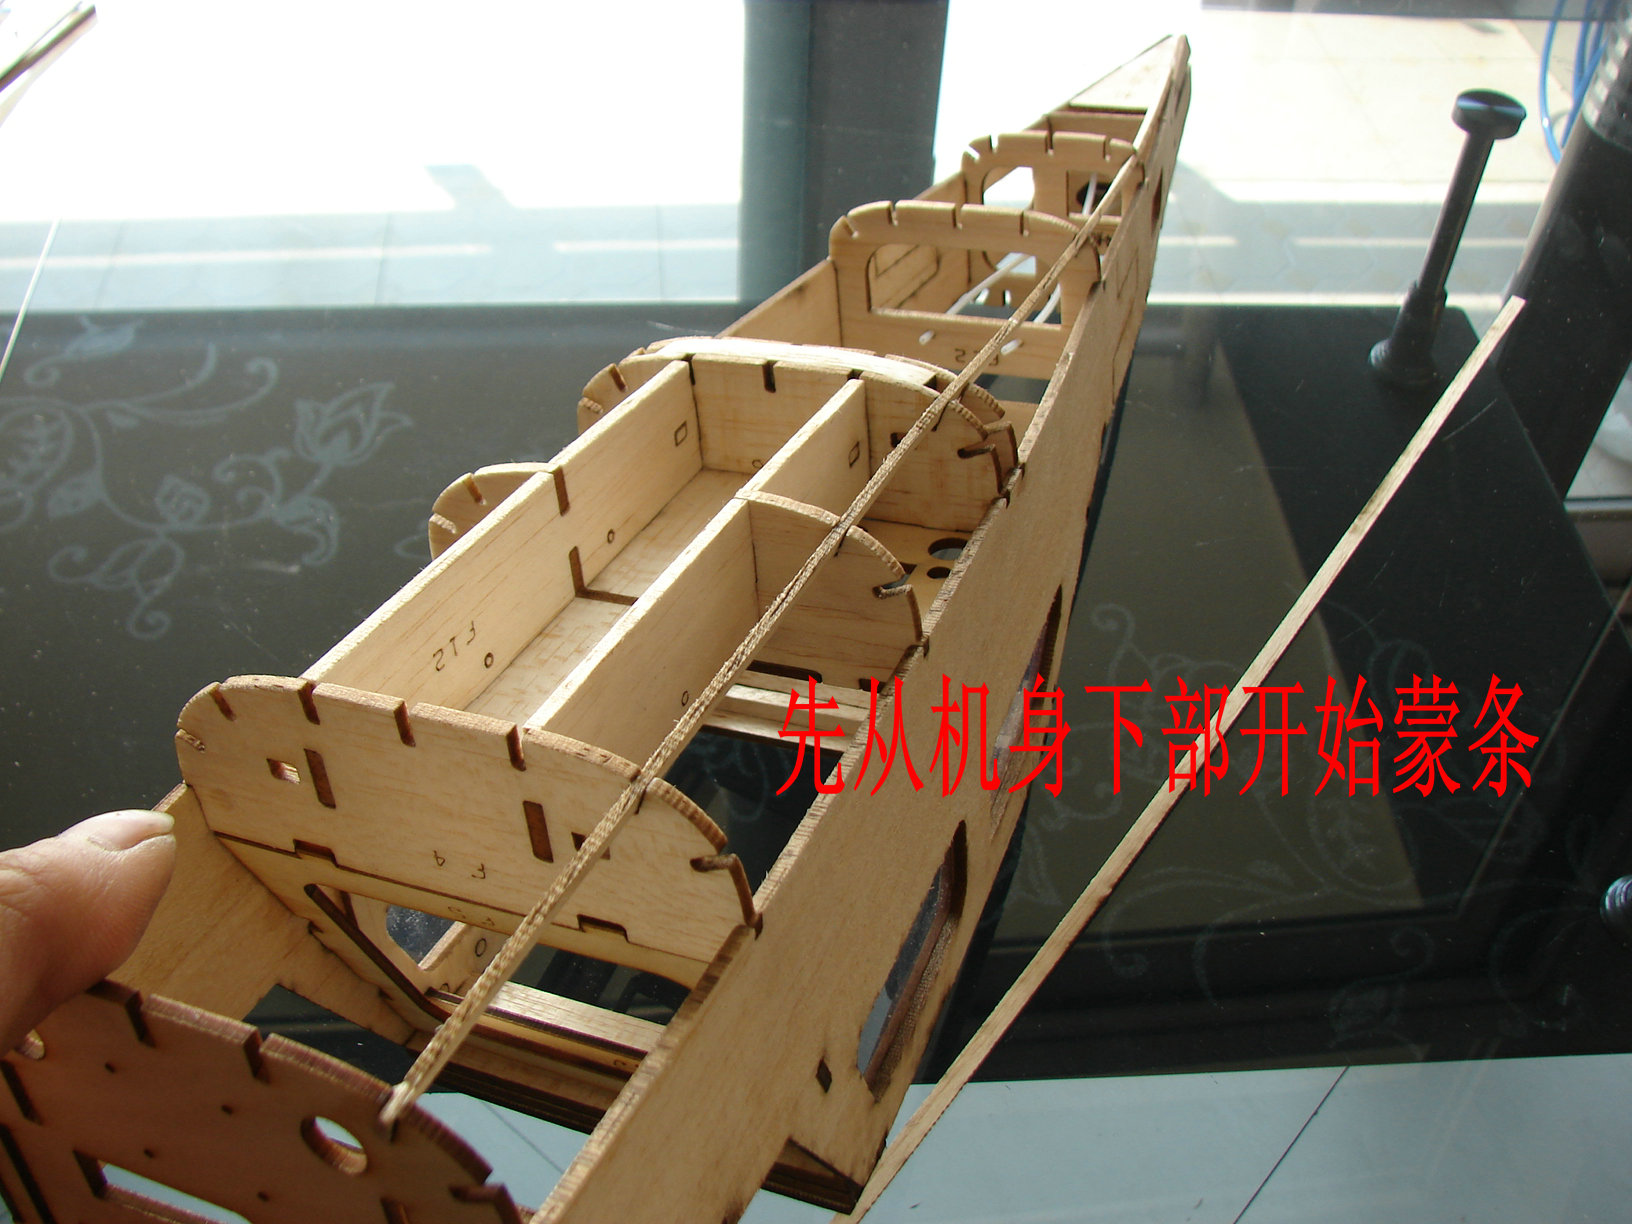 轻木塞斯纳182套材组装教程 给大家参考用图很多 塞斯纳,轻木,轻木哪里有卖 作者:wengchuankuo 1079 